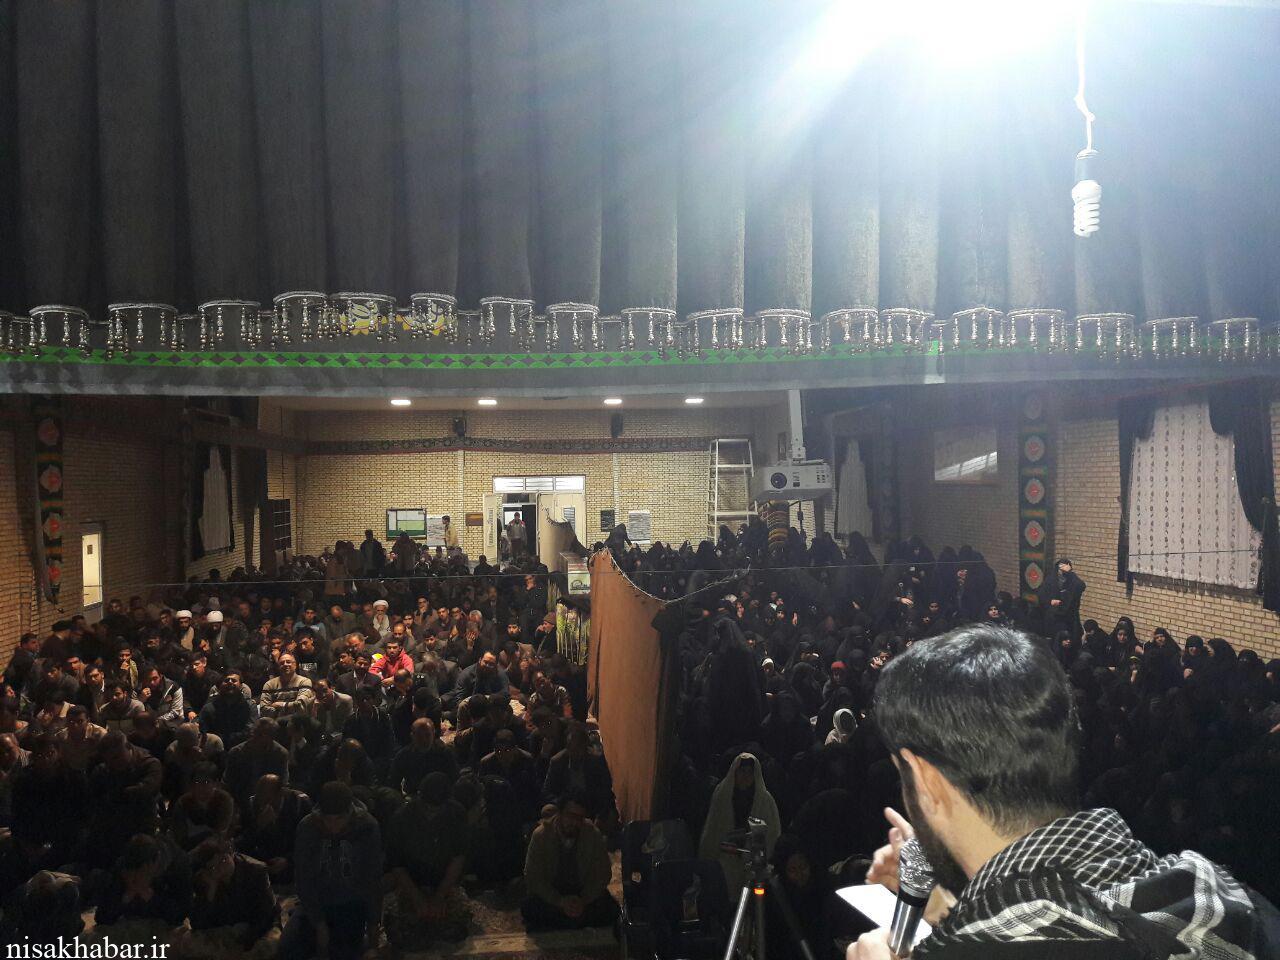 مراسم شبی باشهدا هم اکنون  در حسینیه عاشقان ثار الله ناحیه مقاومت  بروجرد